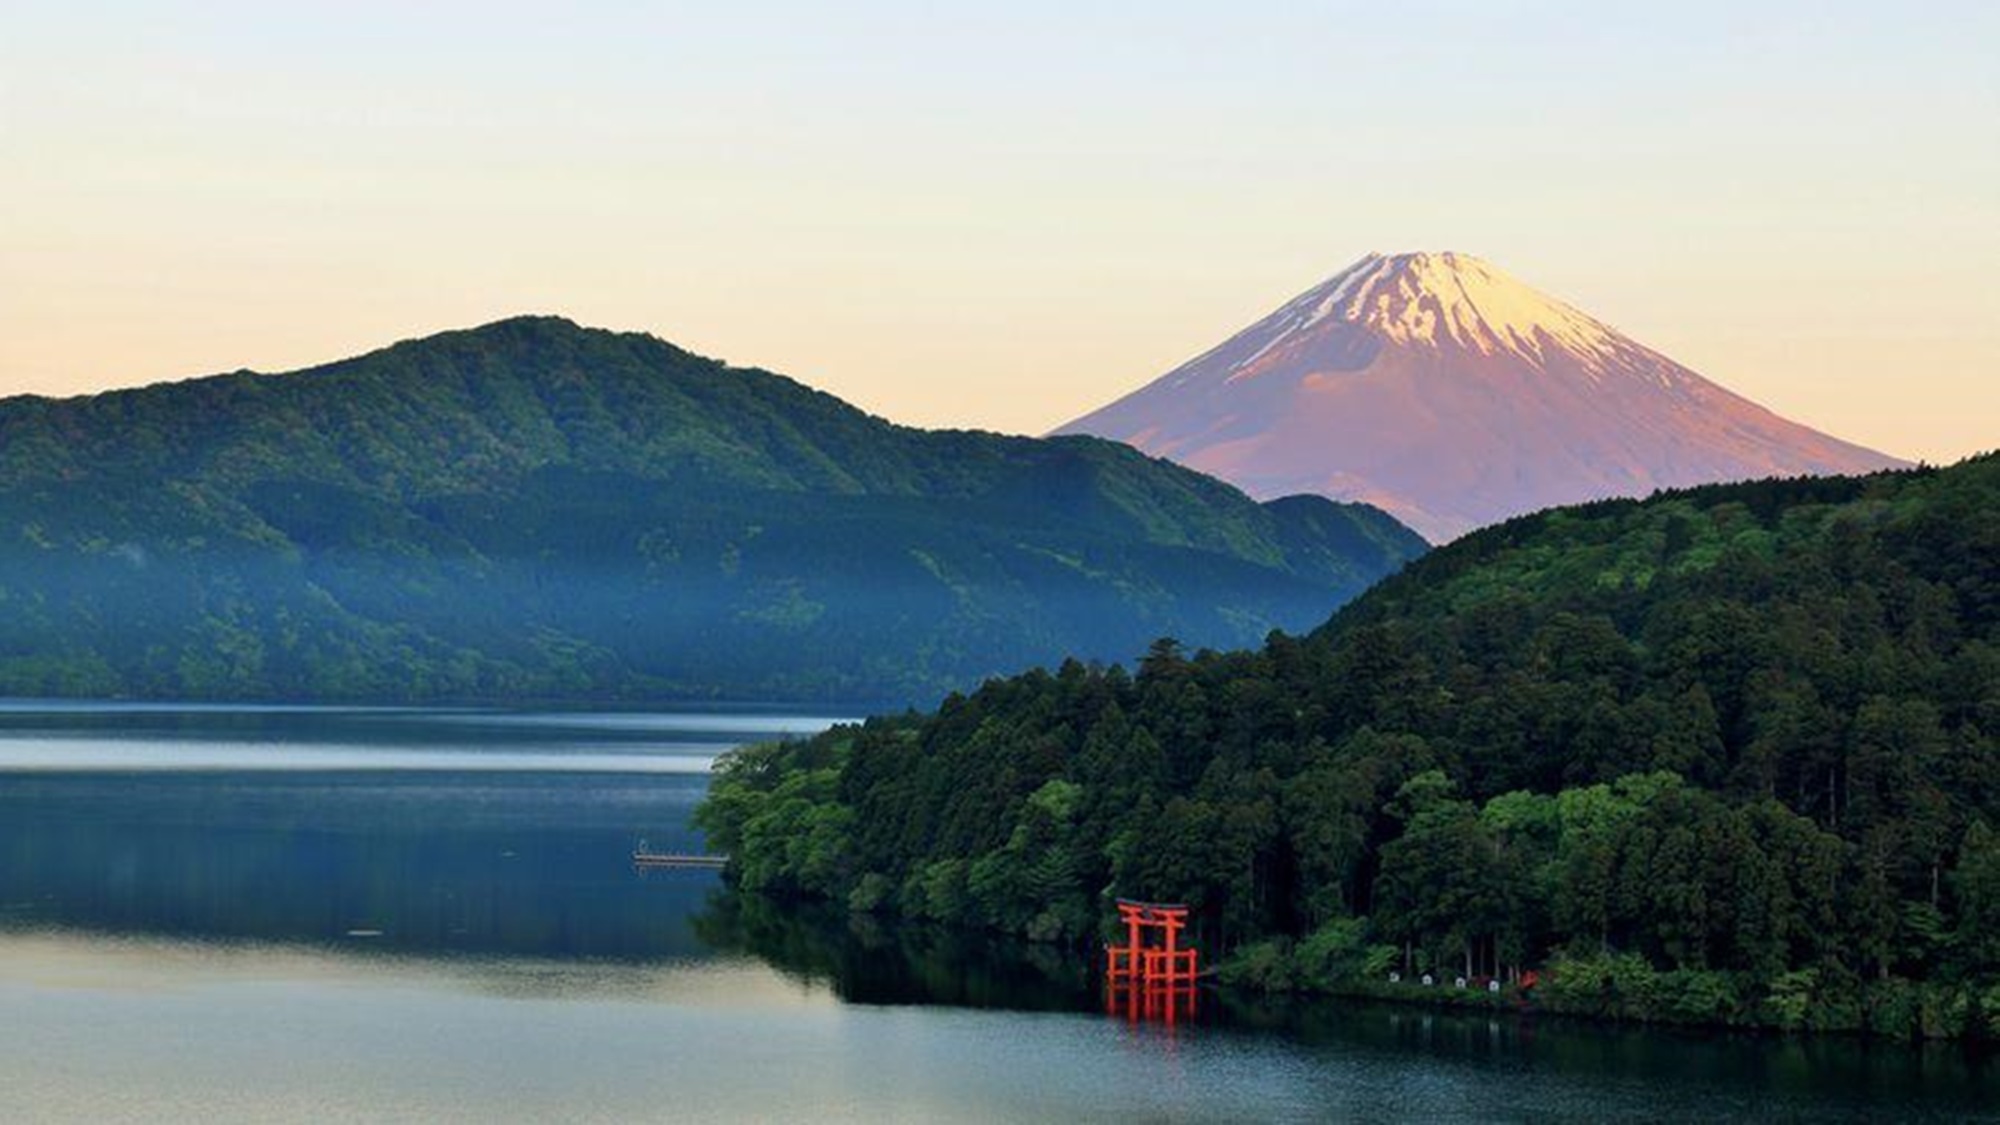 【芦ノ湖】西に富士山を臨み、箱根火山のカルデラ湖。